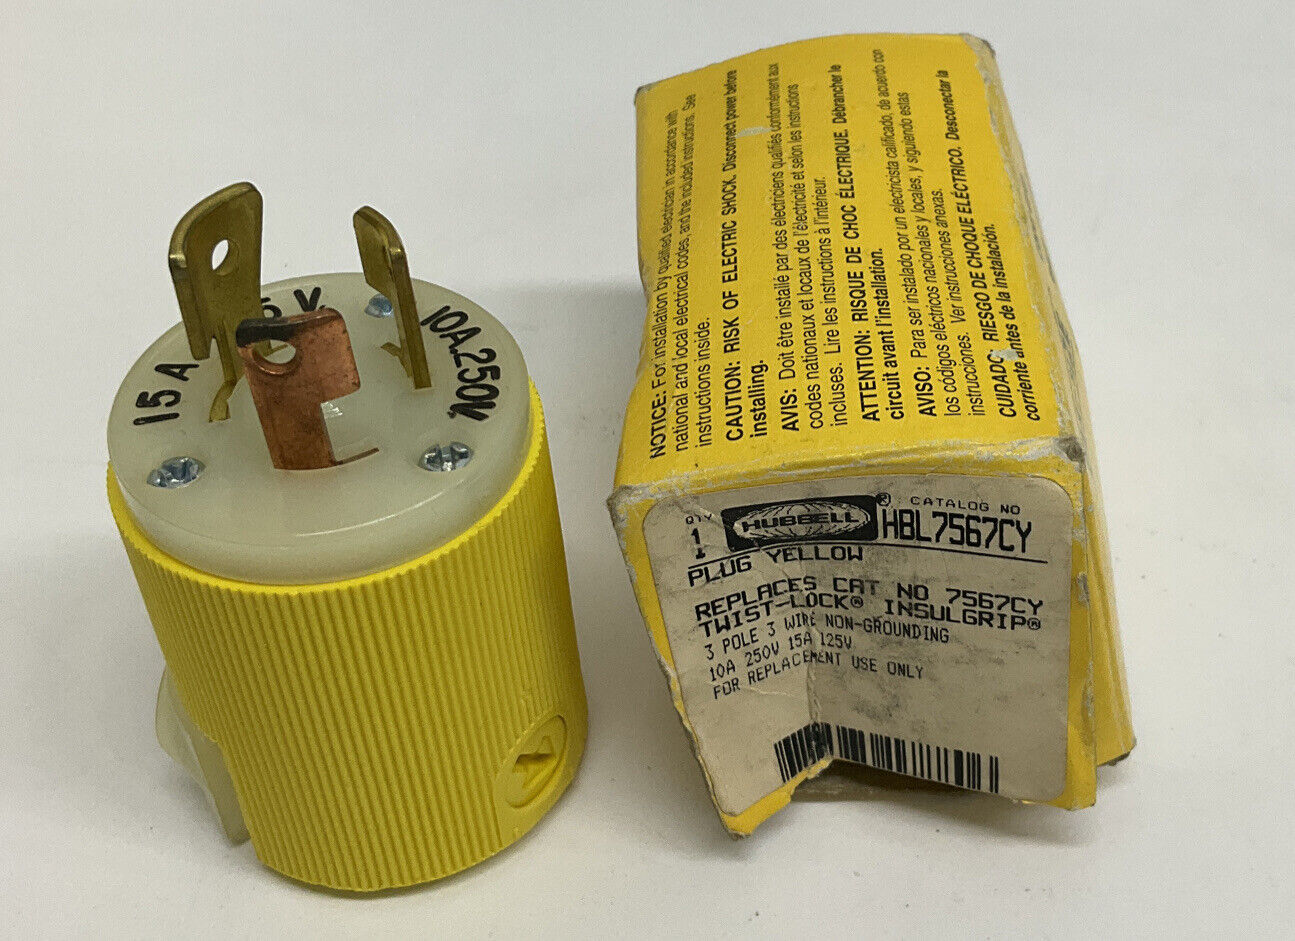 Hubbell HBL756CY / 7567CY Twist-Lock 3-Pole 3-Wire Plug (YE258) - 0